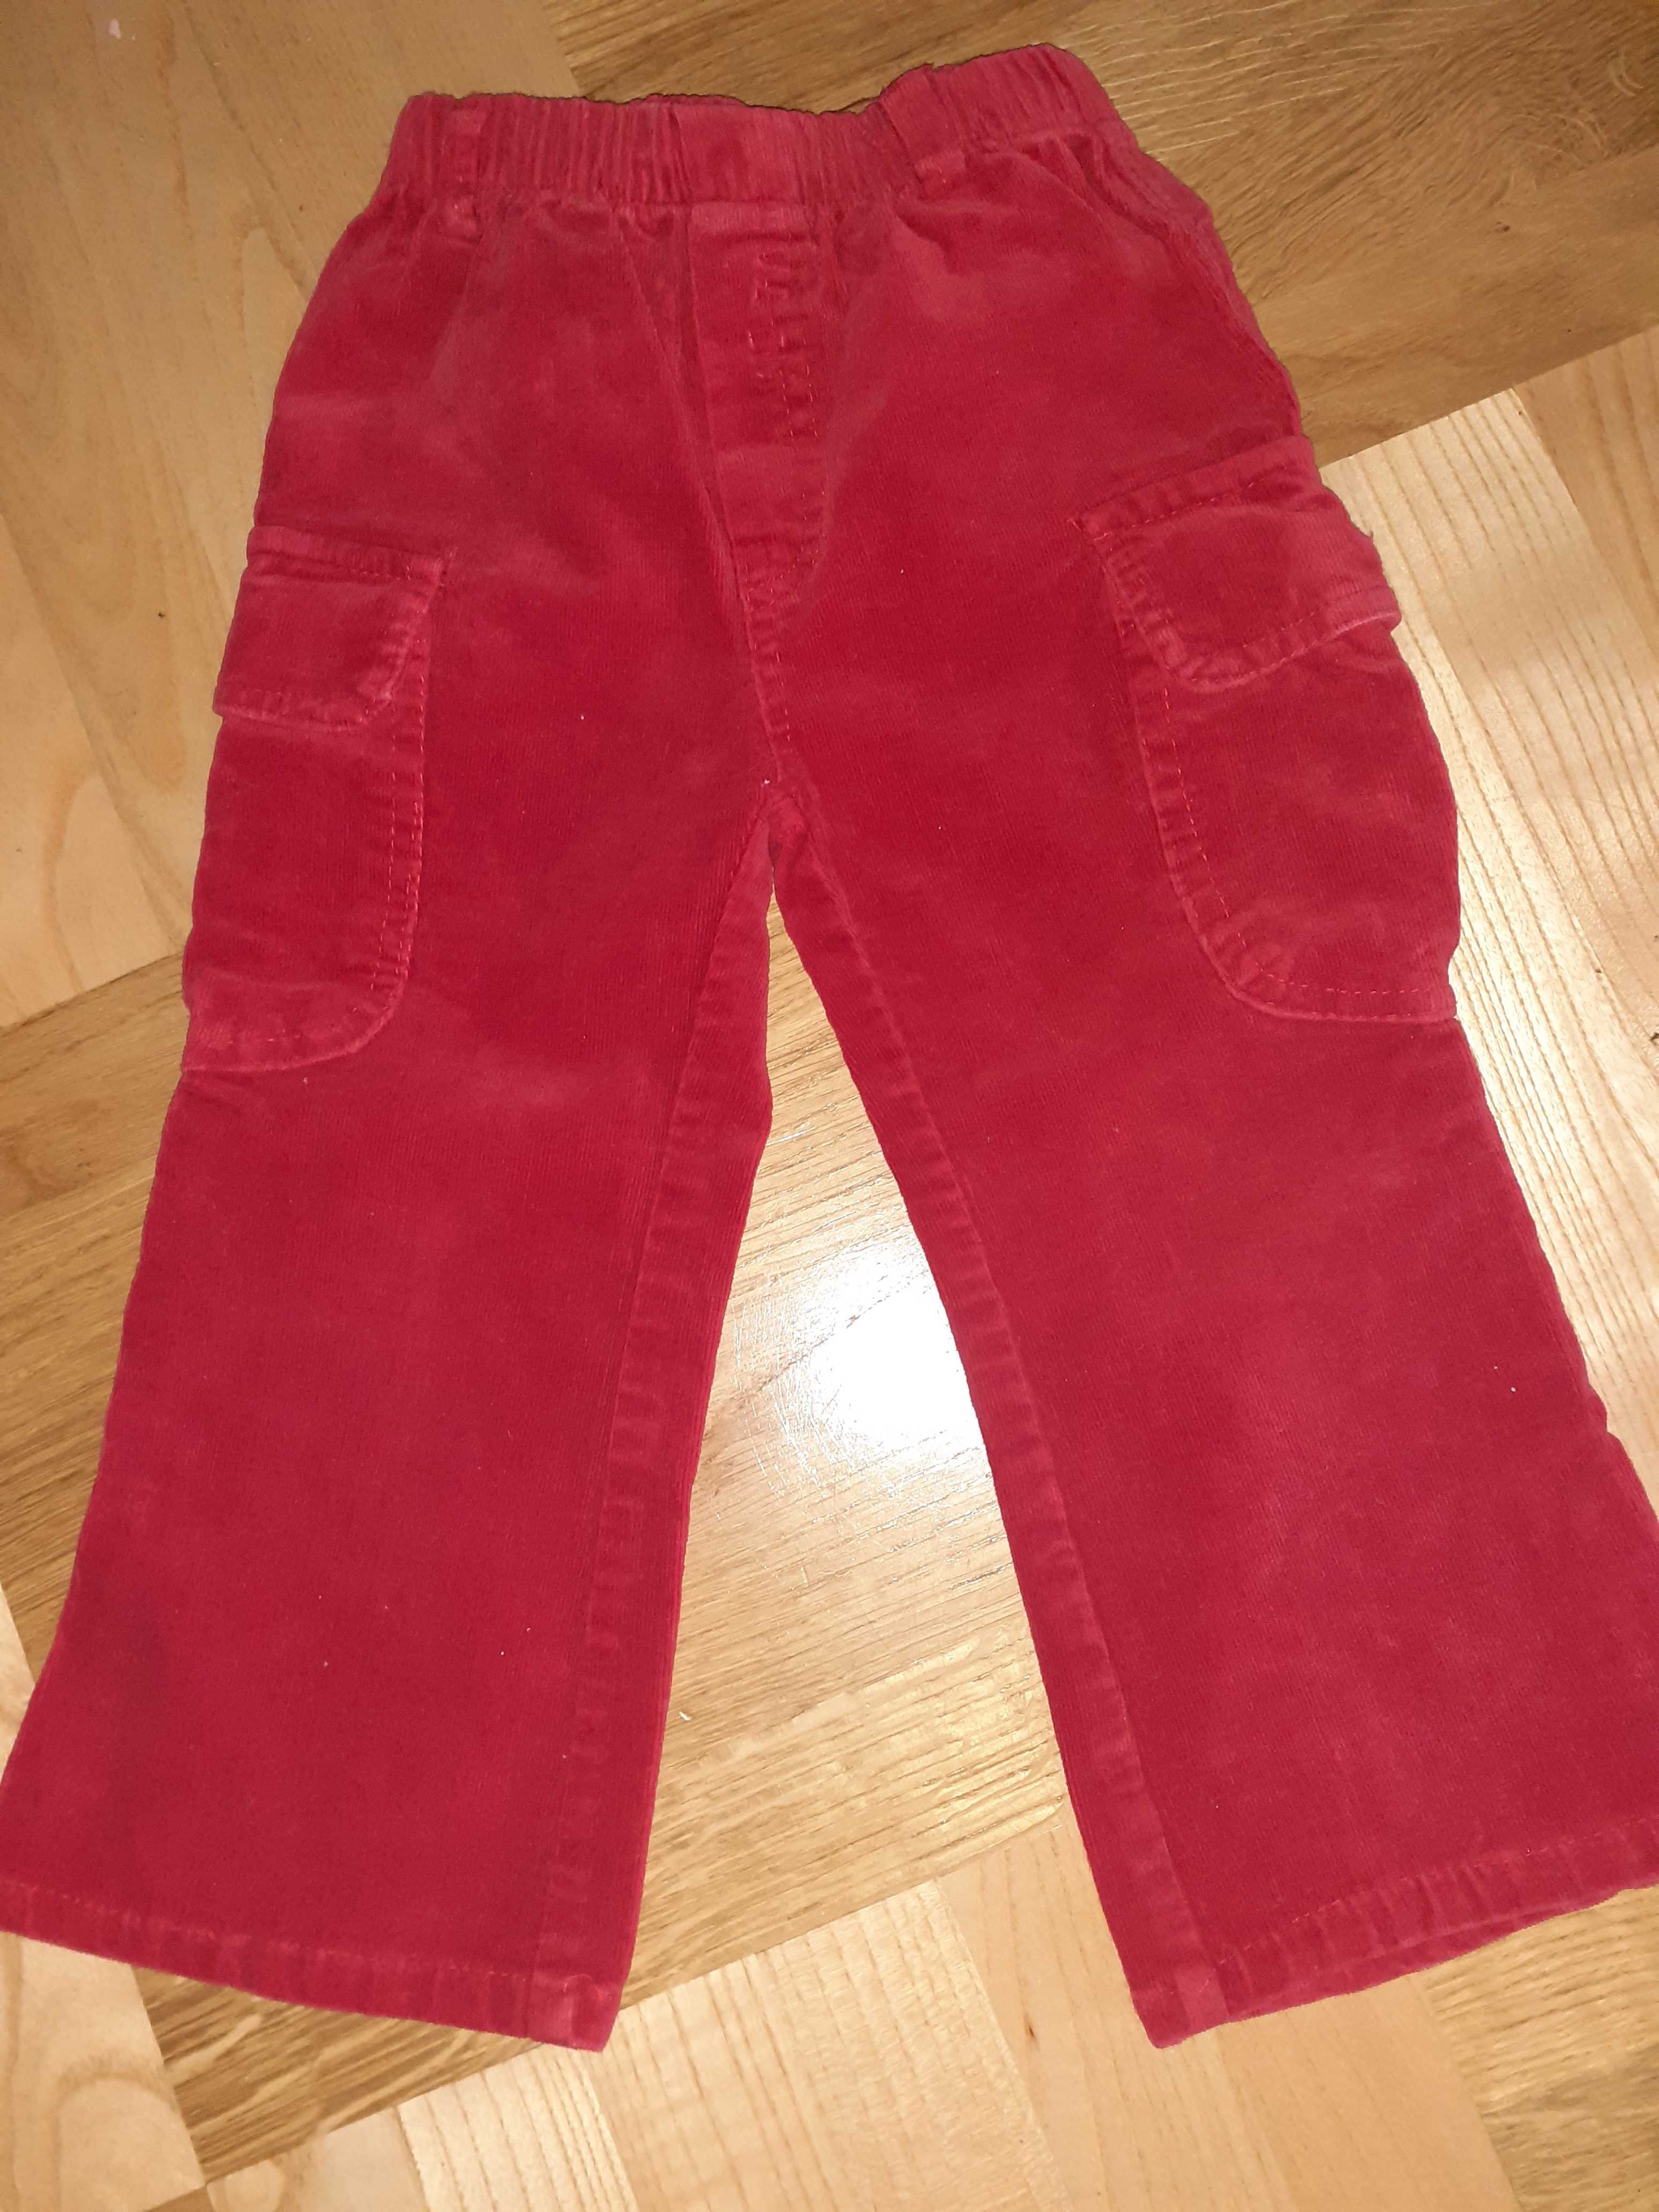 Spodnie + żakiet / komplet sztruksowy 2-3 latka